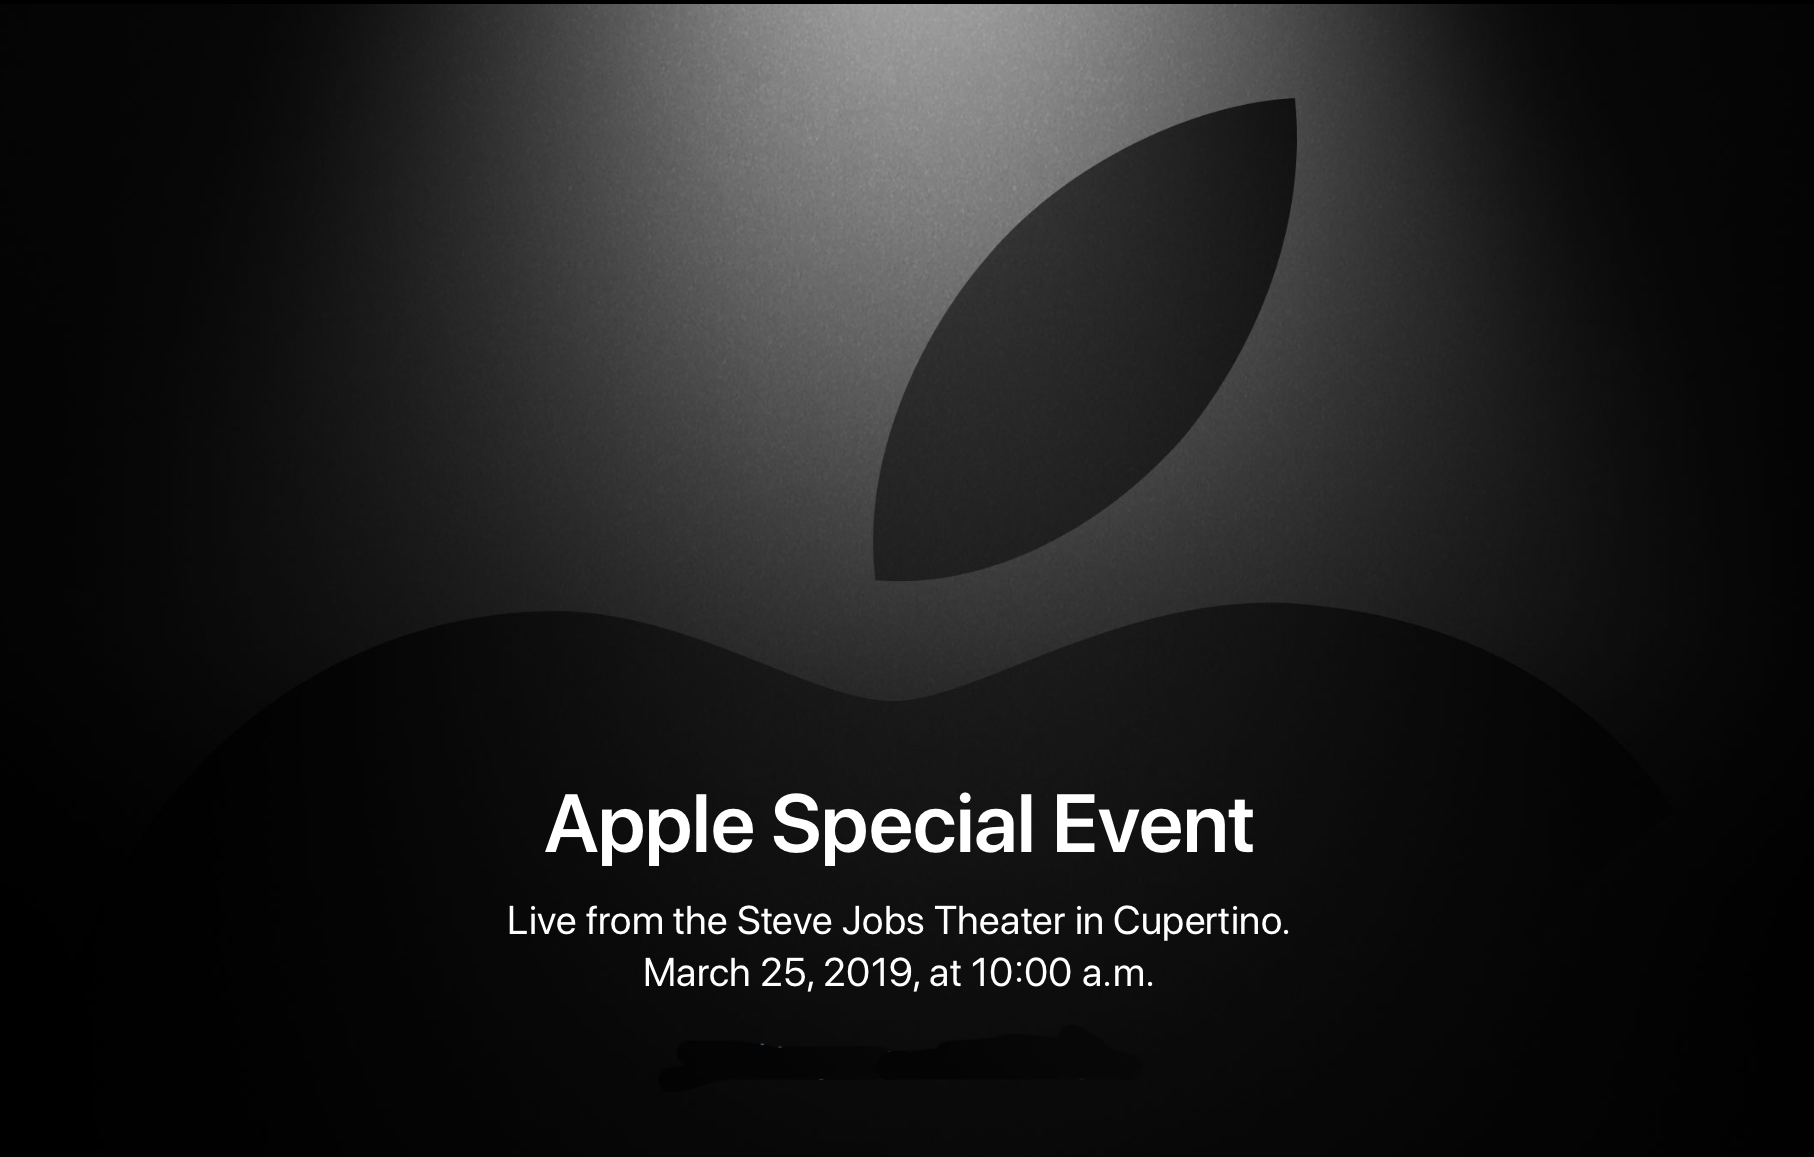 It’s show time, Apple ประกาศจัดงานพิเศษขึ้นในวันที่ 25 มีนาคมนี้!